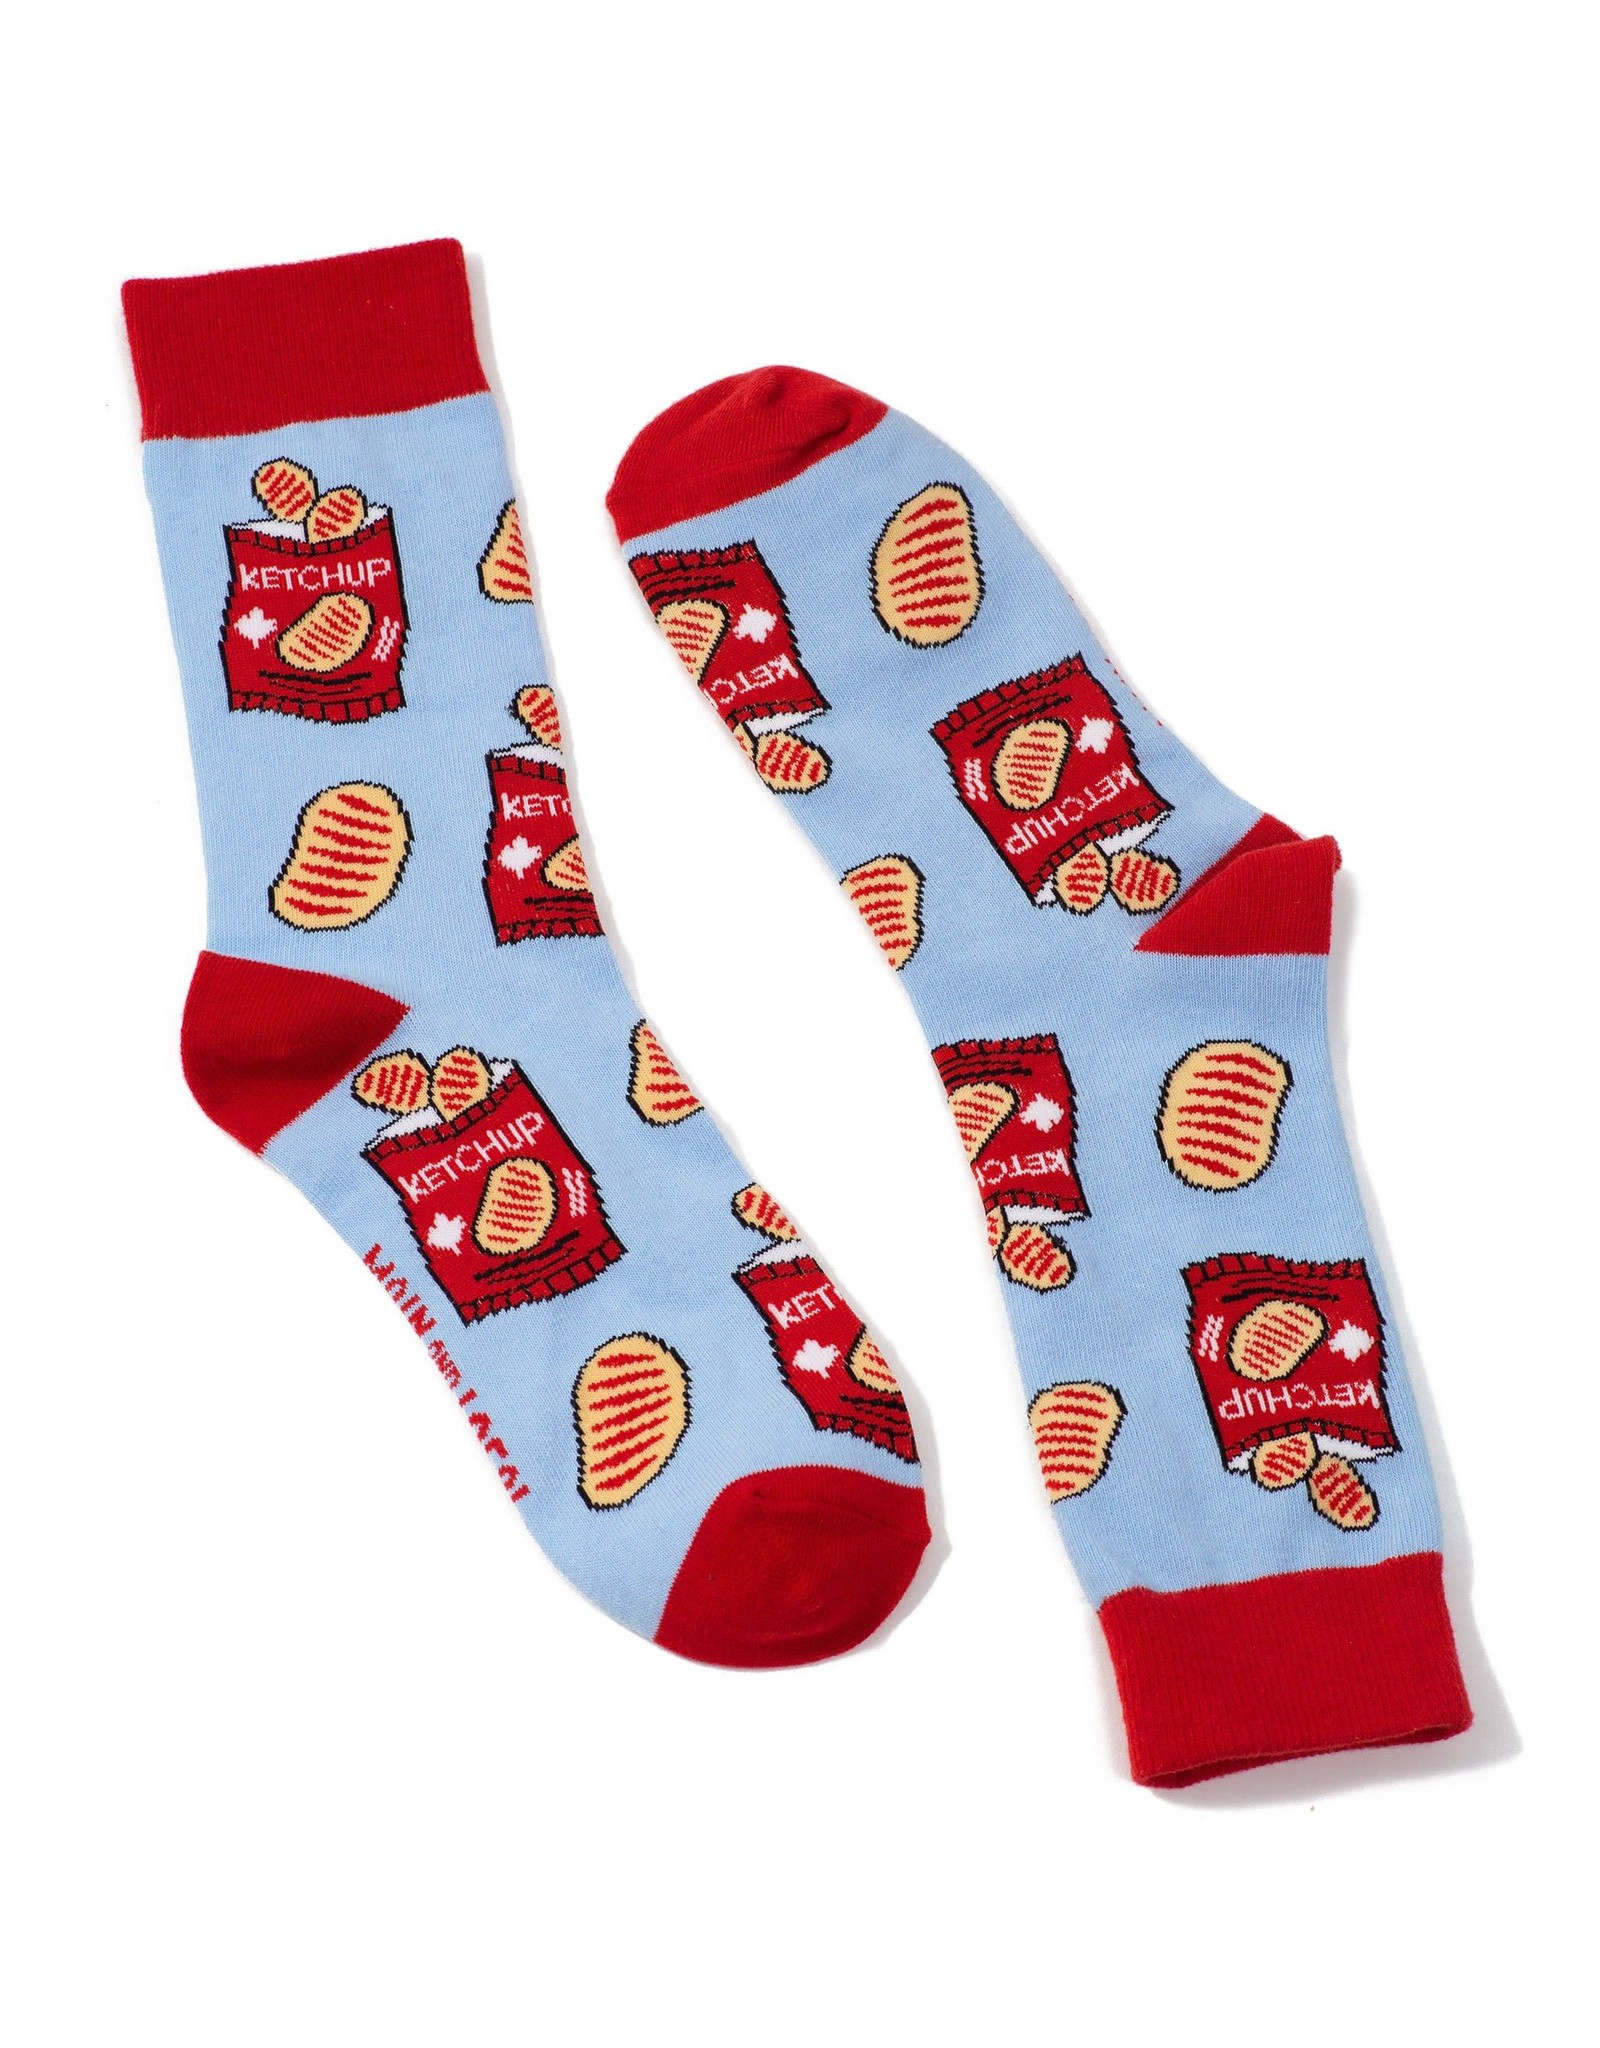 Main & Local Canadian Ketchup Chips Socks